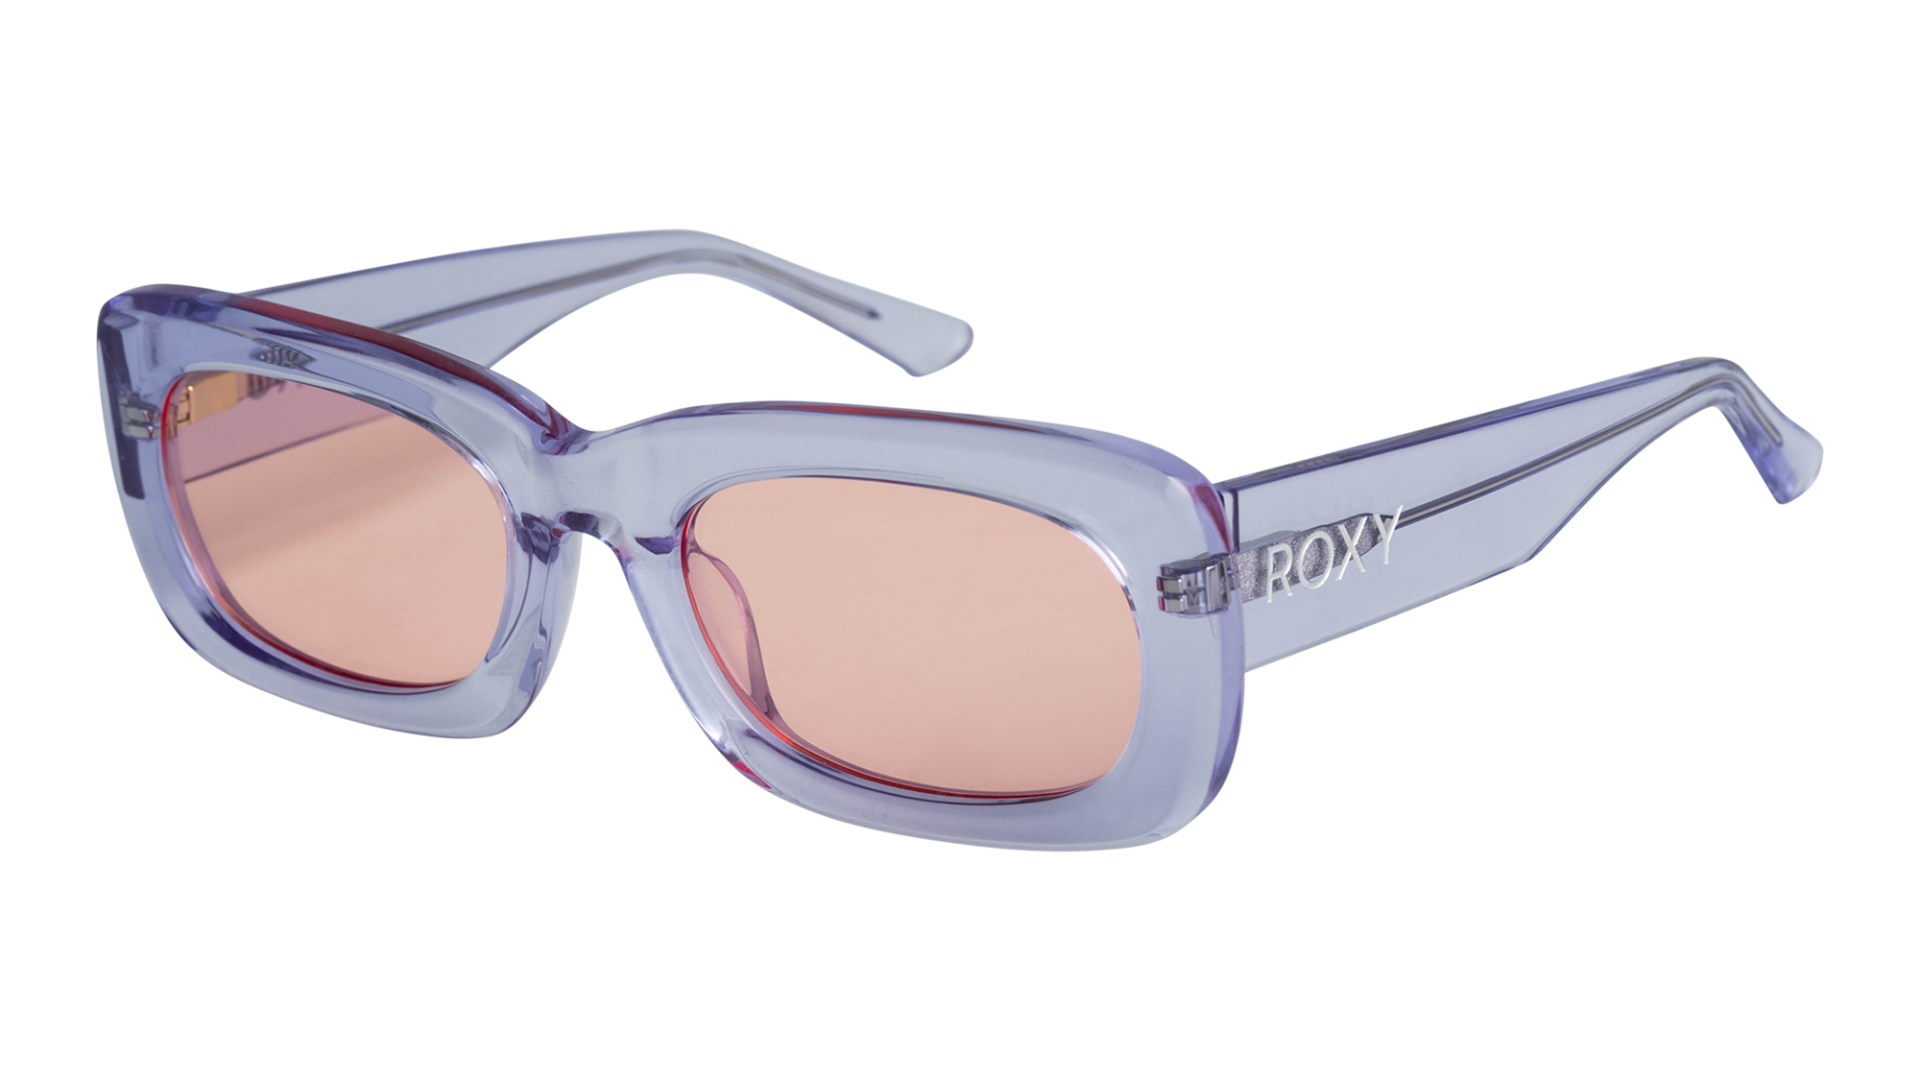 Roxy Sunglasses S/S - SOURCE Boardsport 2023 Preview